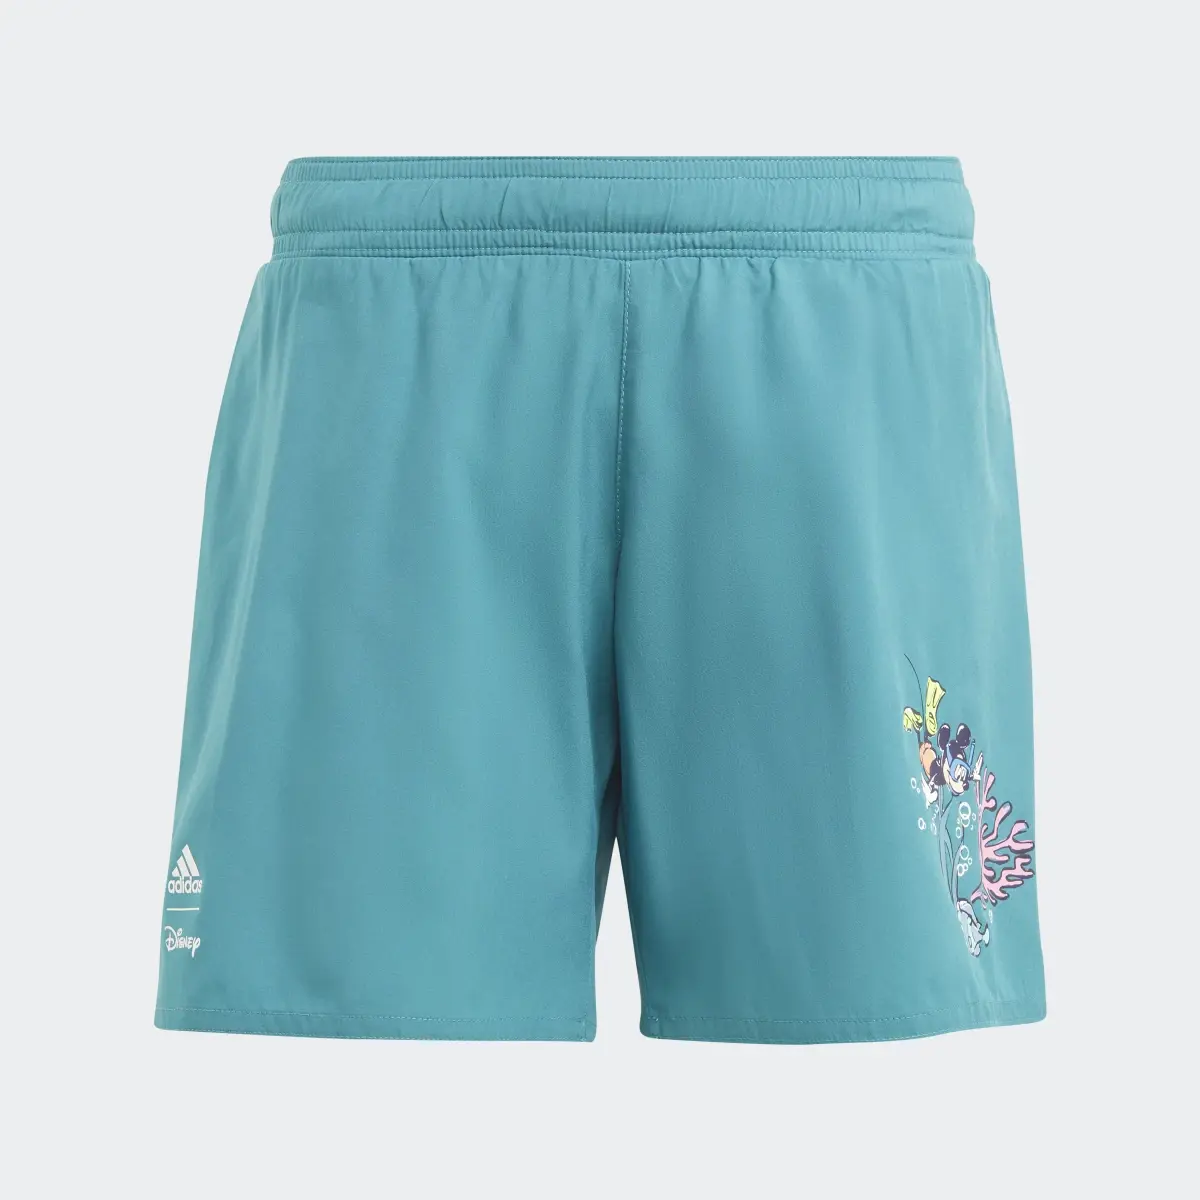 Adidas Szorty adidas x Disney Mickey Mouse Swim. 1